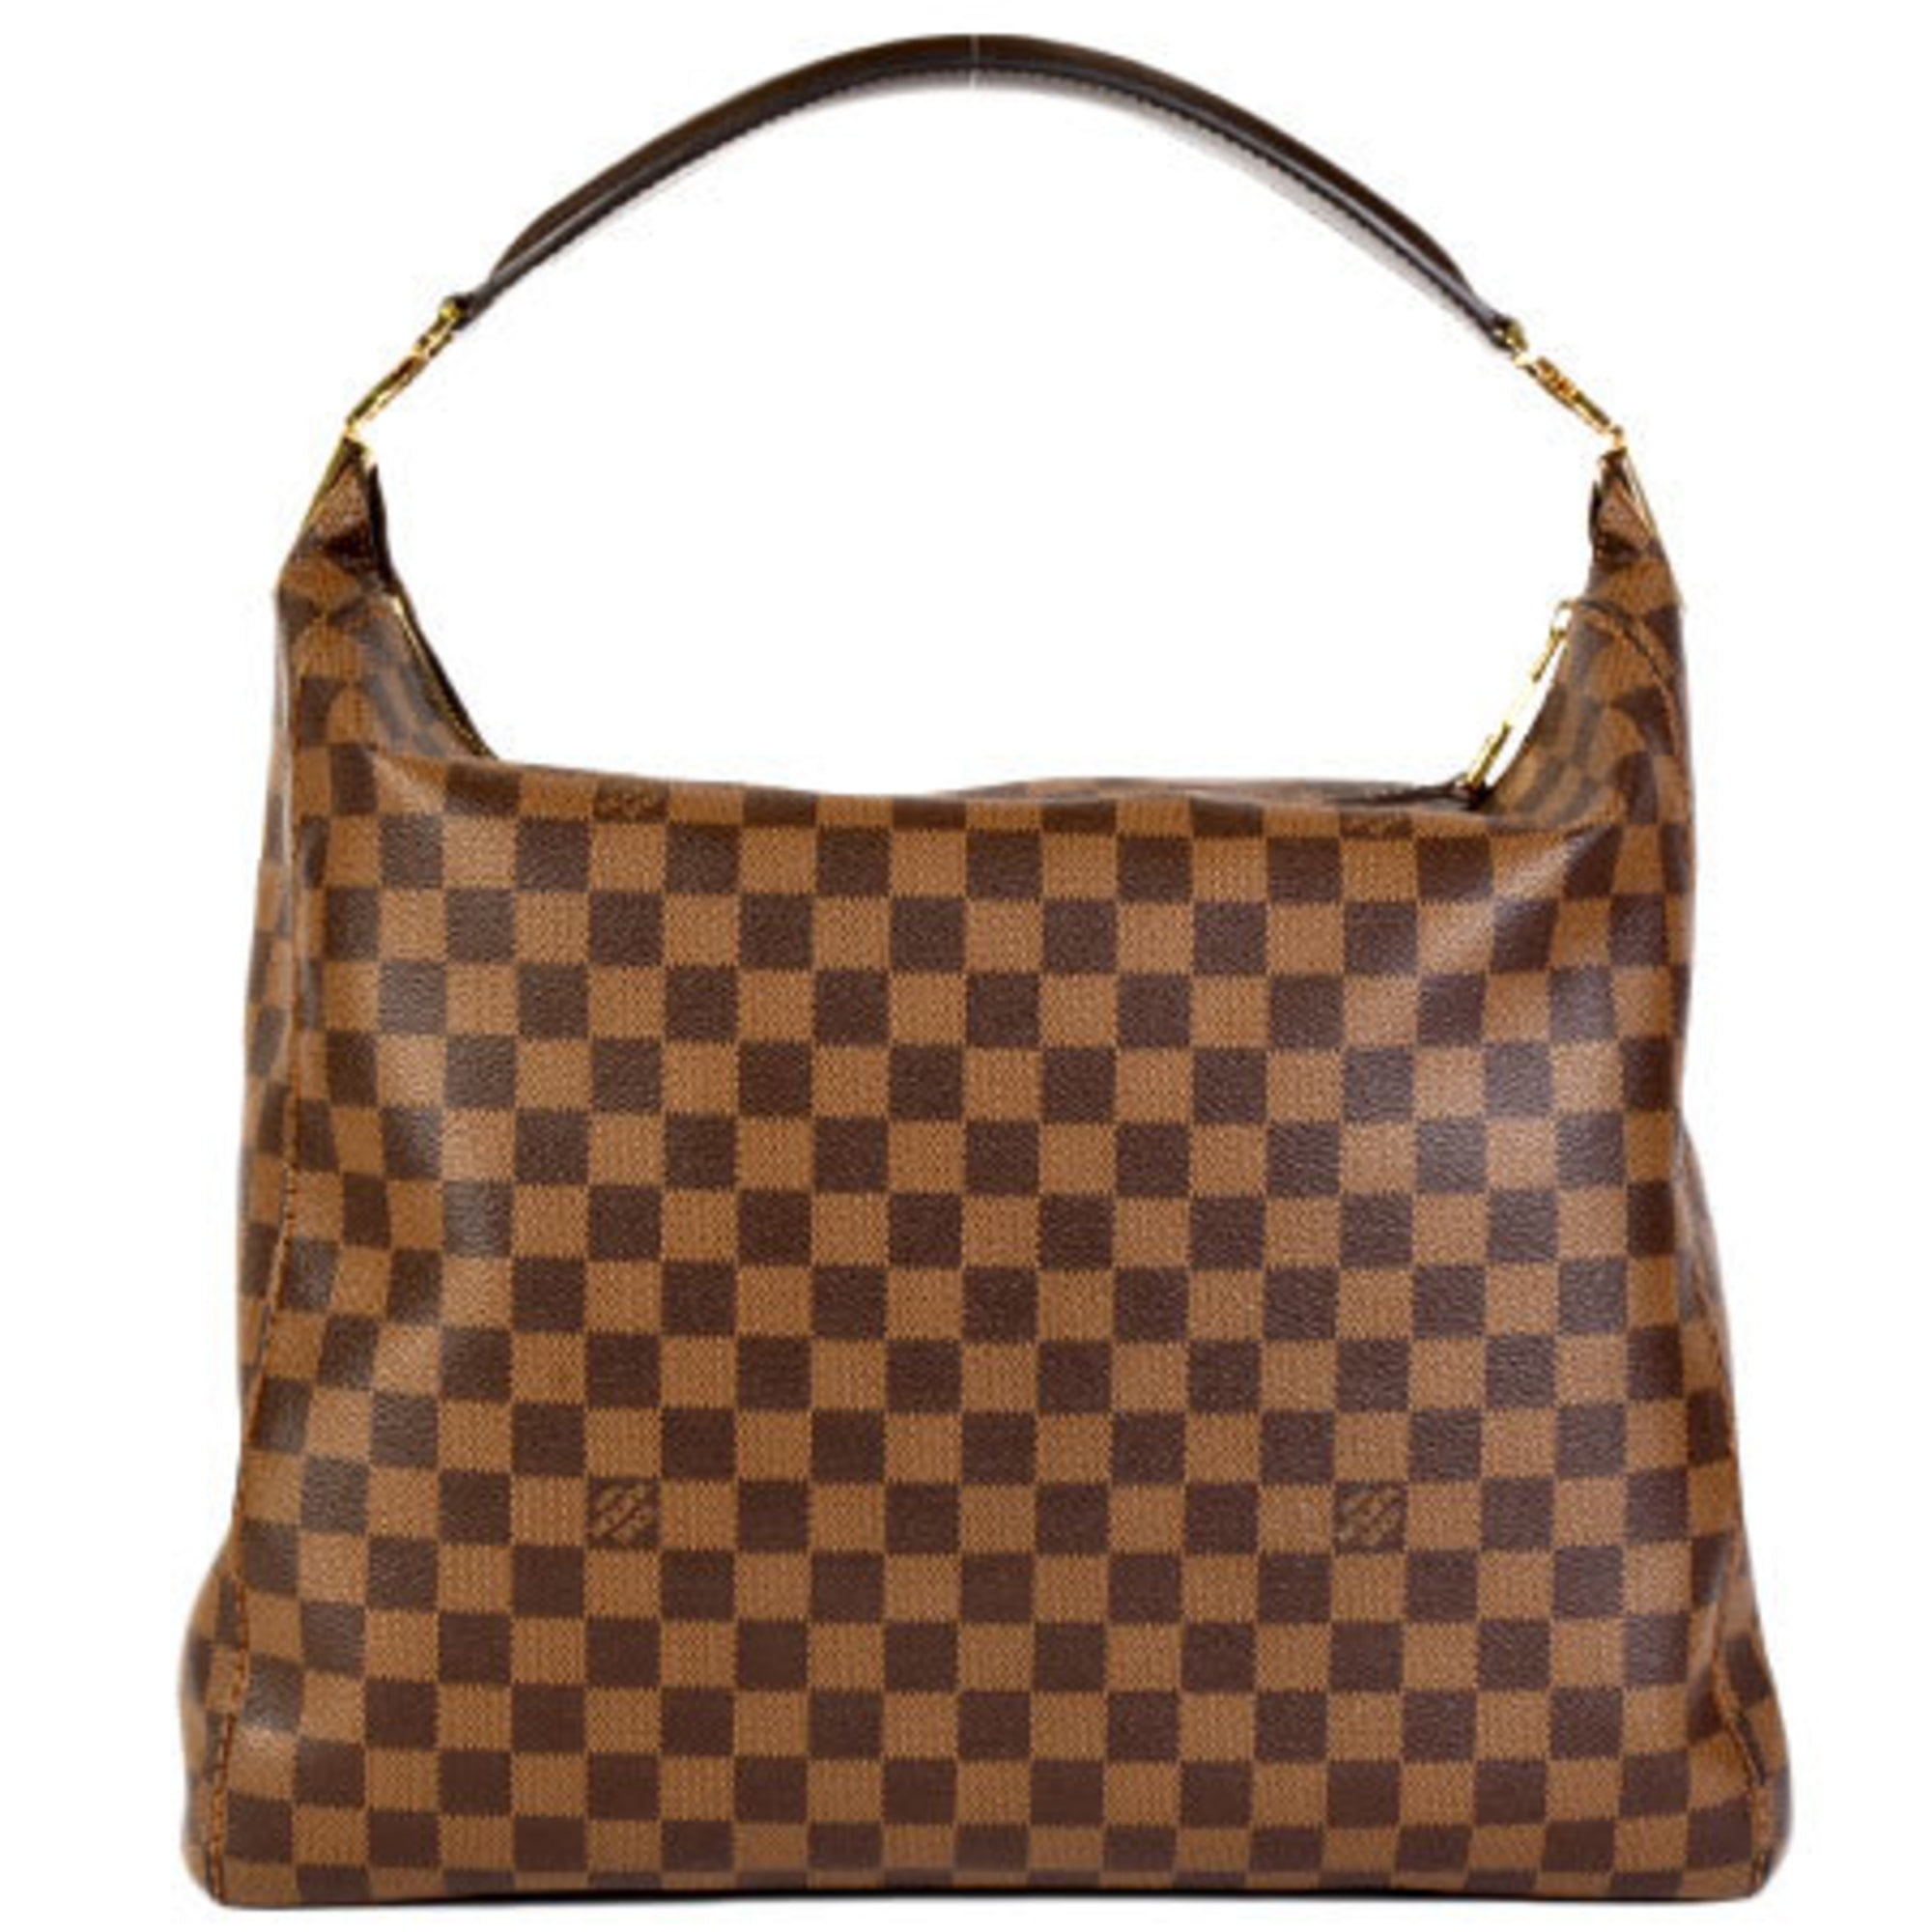 Authenticated used Louis Vuitton Louis Vuitton Portobello GM Bag Handbag Damier Ebene N41185, Adult Unisex, Size: (HxWxD): 34cm x 36cm x 12cm / 13.38